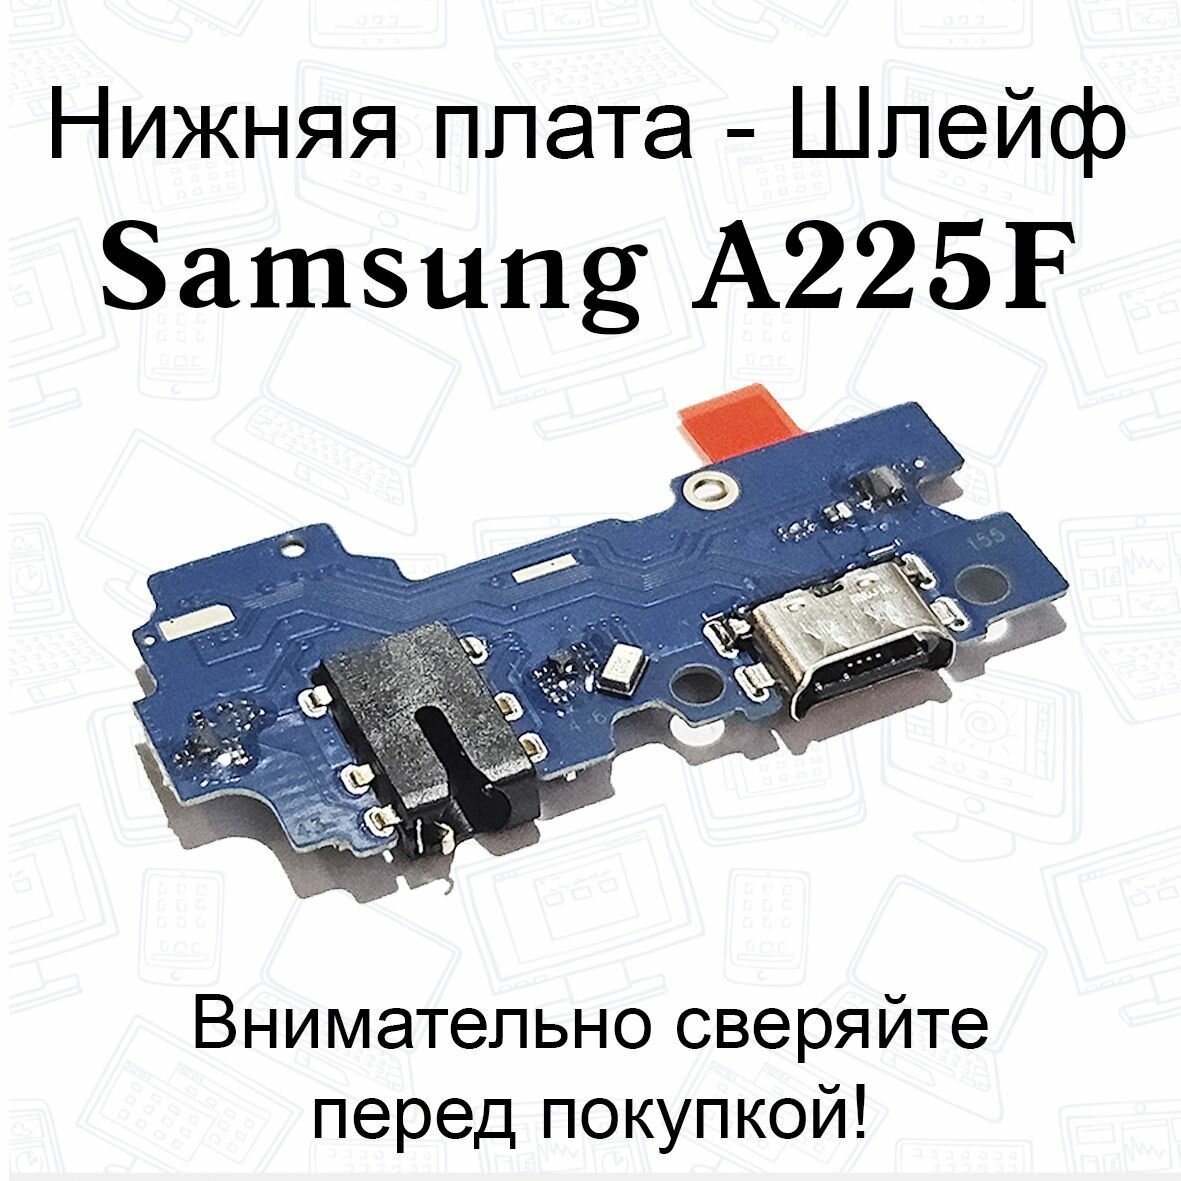 Нижняя плата/шлейфдля Samsung Galaxy A22 (A225F) системный разъем/разъем гарнитуры/микрофон OEM